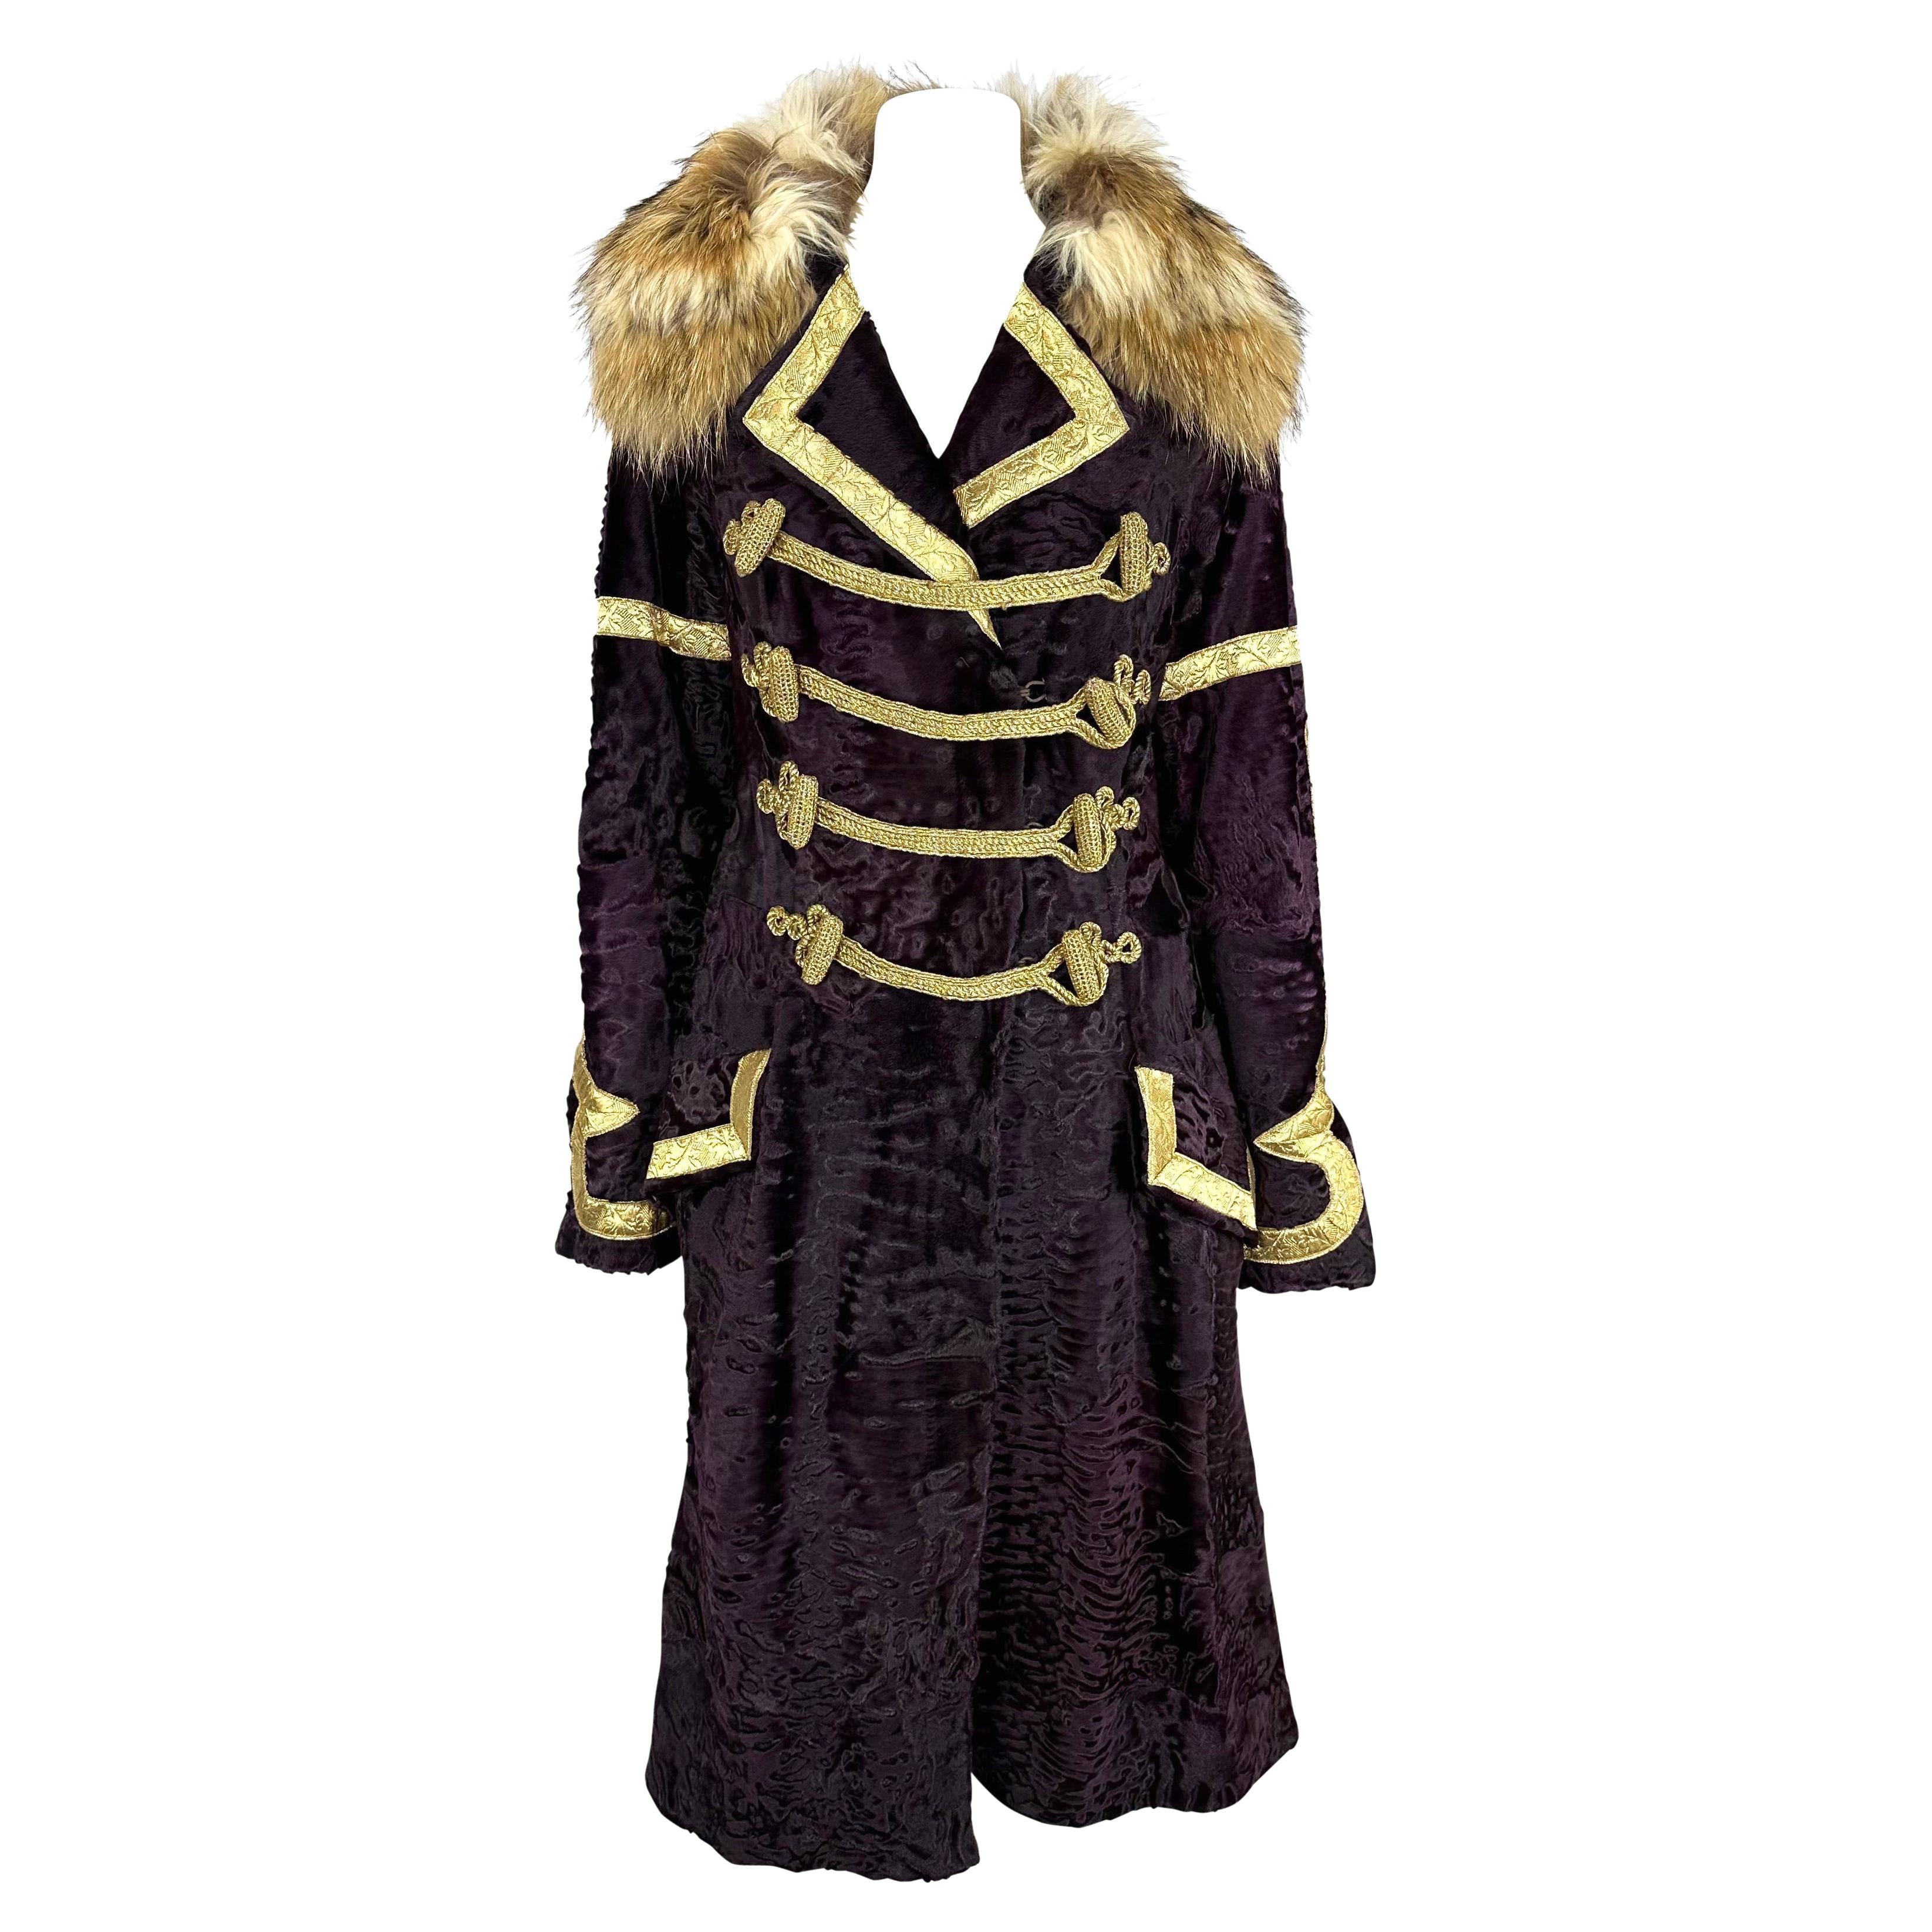 When were Persian lamb coats popular?